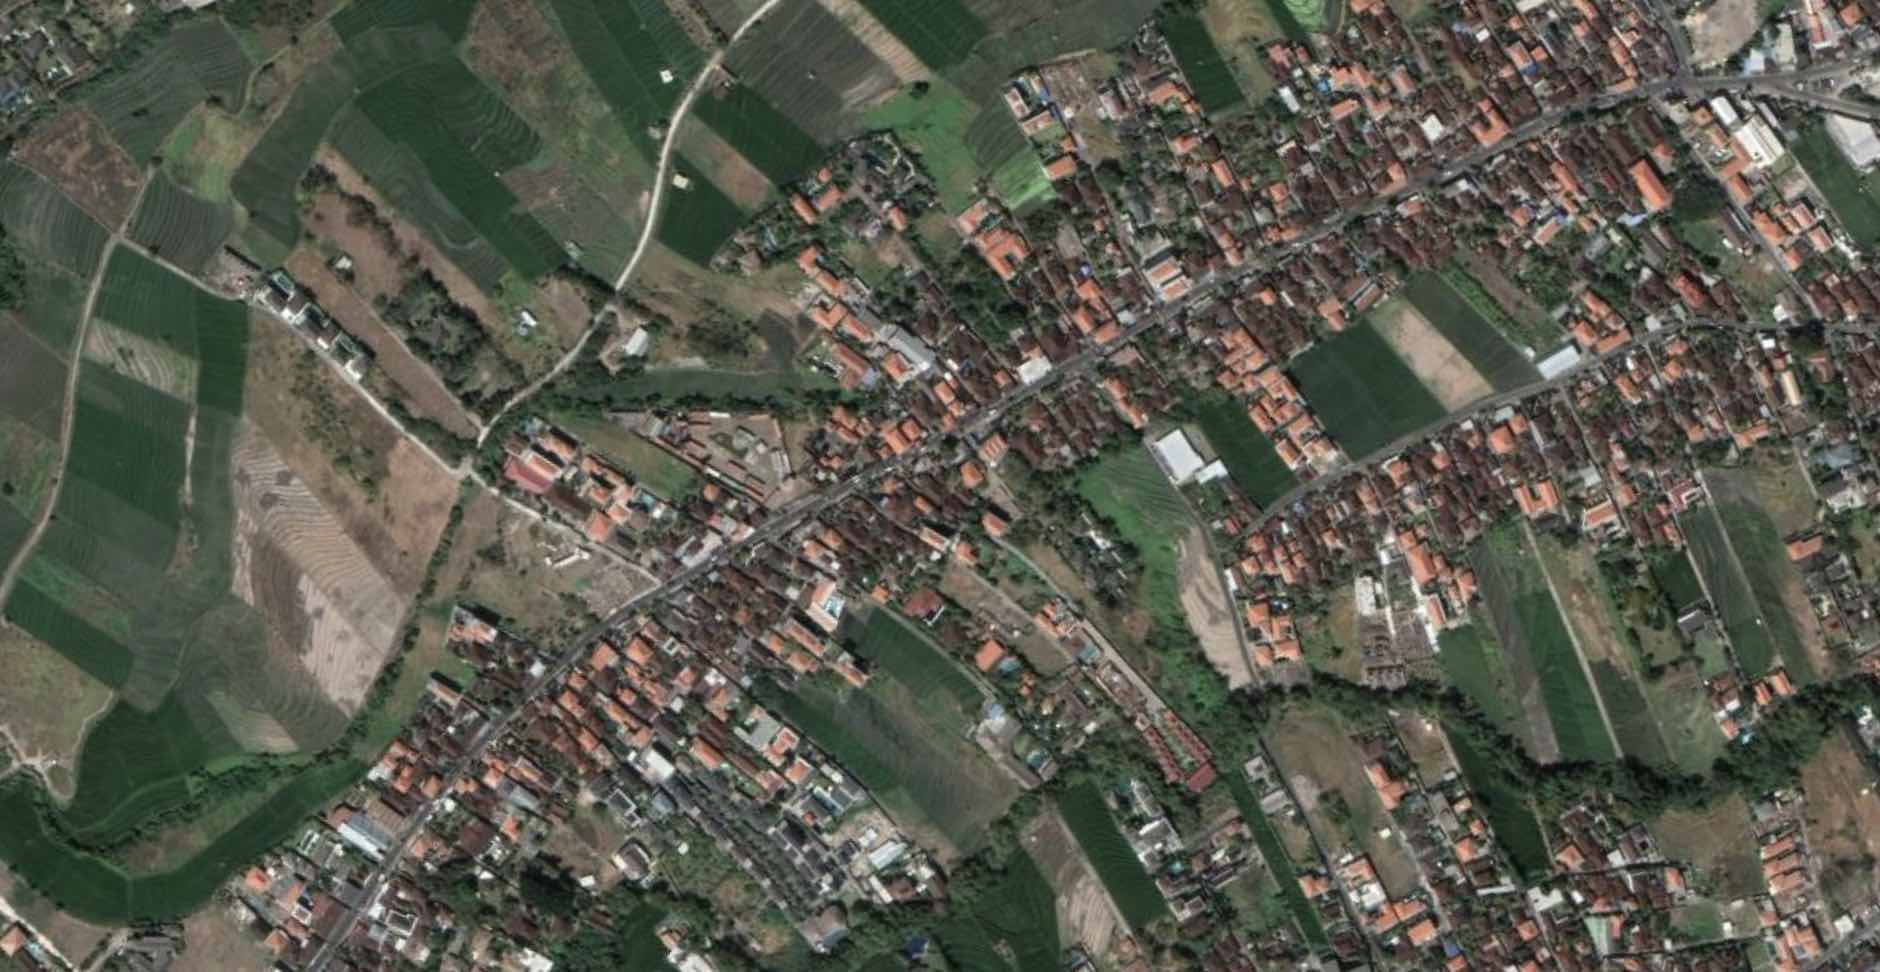 An aerial view of Canggu. Photo: Google Earth